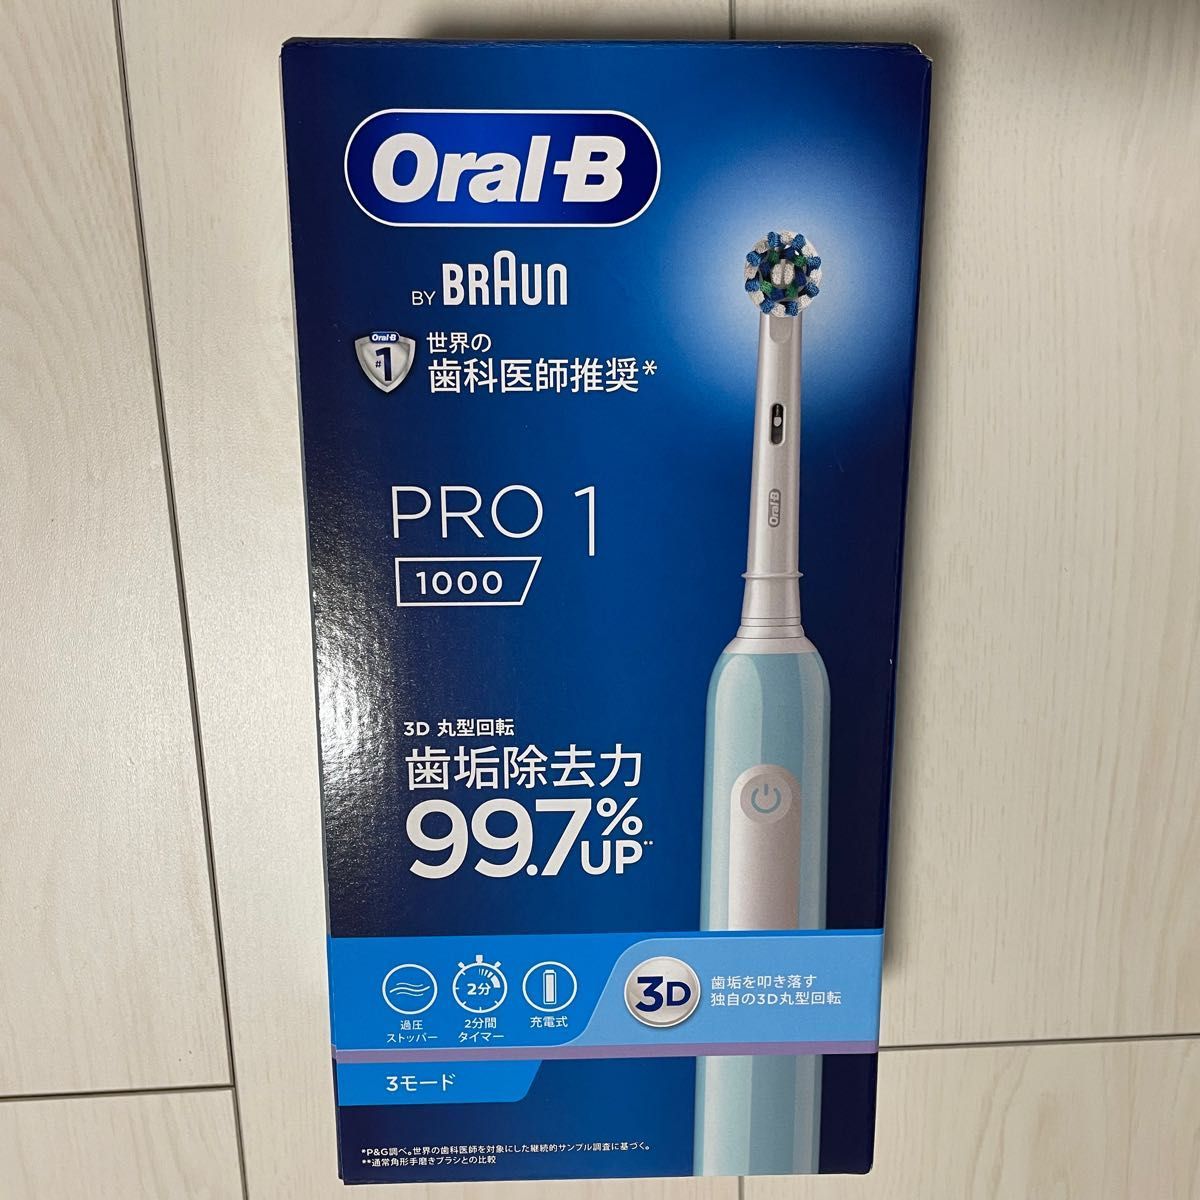 【お値下げ中】 Oral-B オーラルB by BRAUN PRO1 1000 電動歯ブラシ 